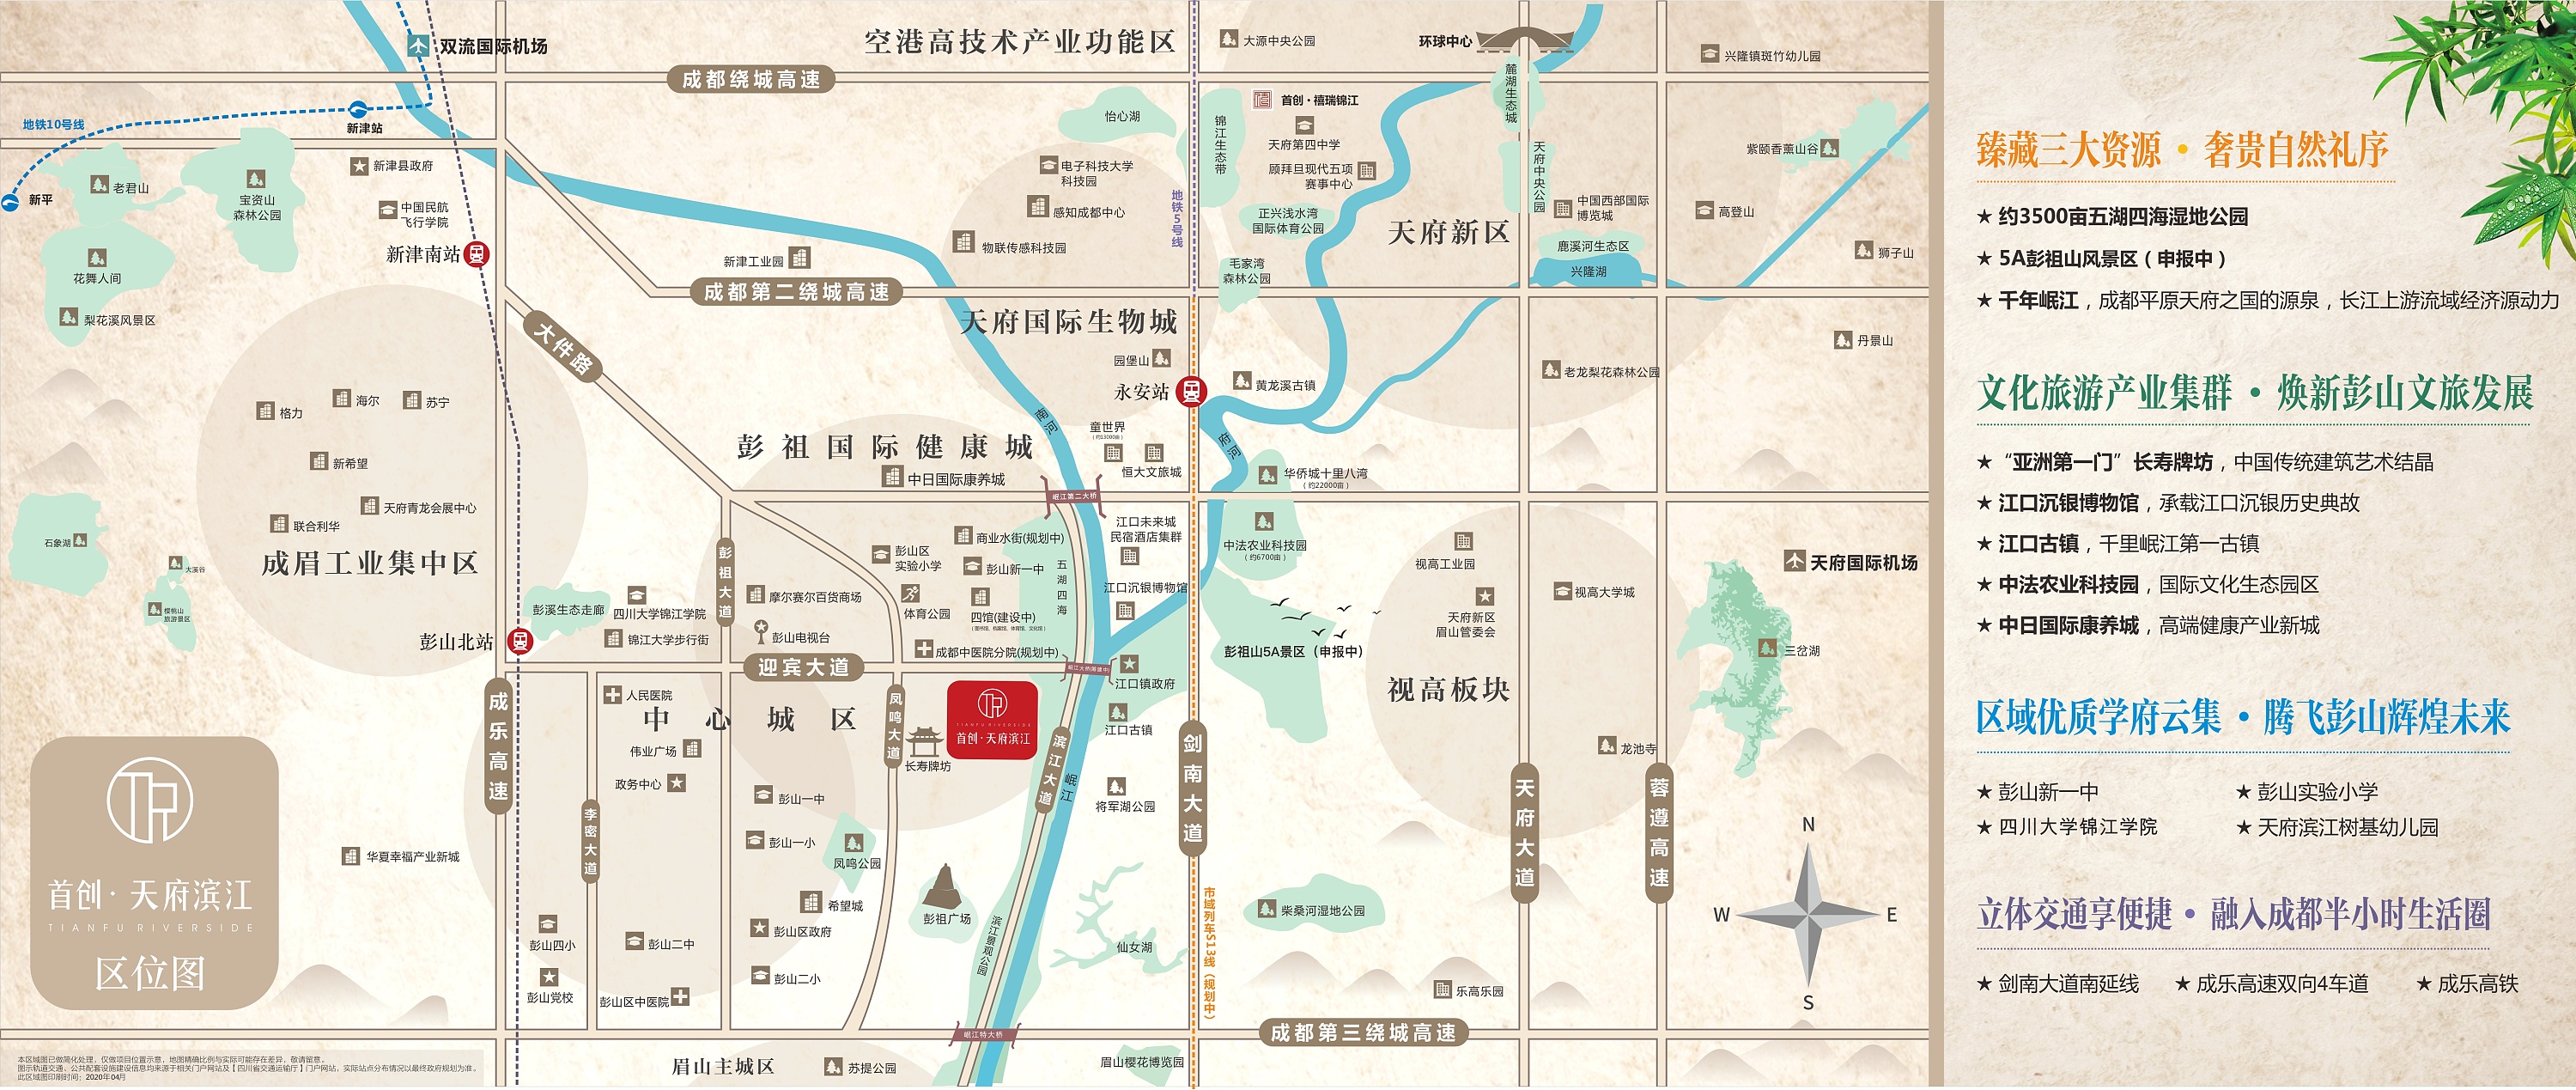 首创 天府滨江 微信宣传飞机稿及区位图